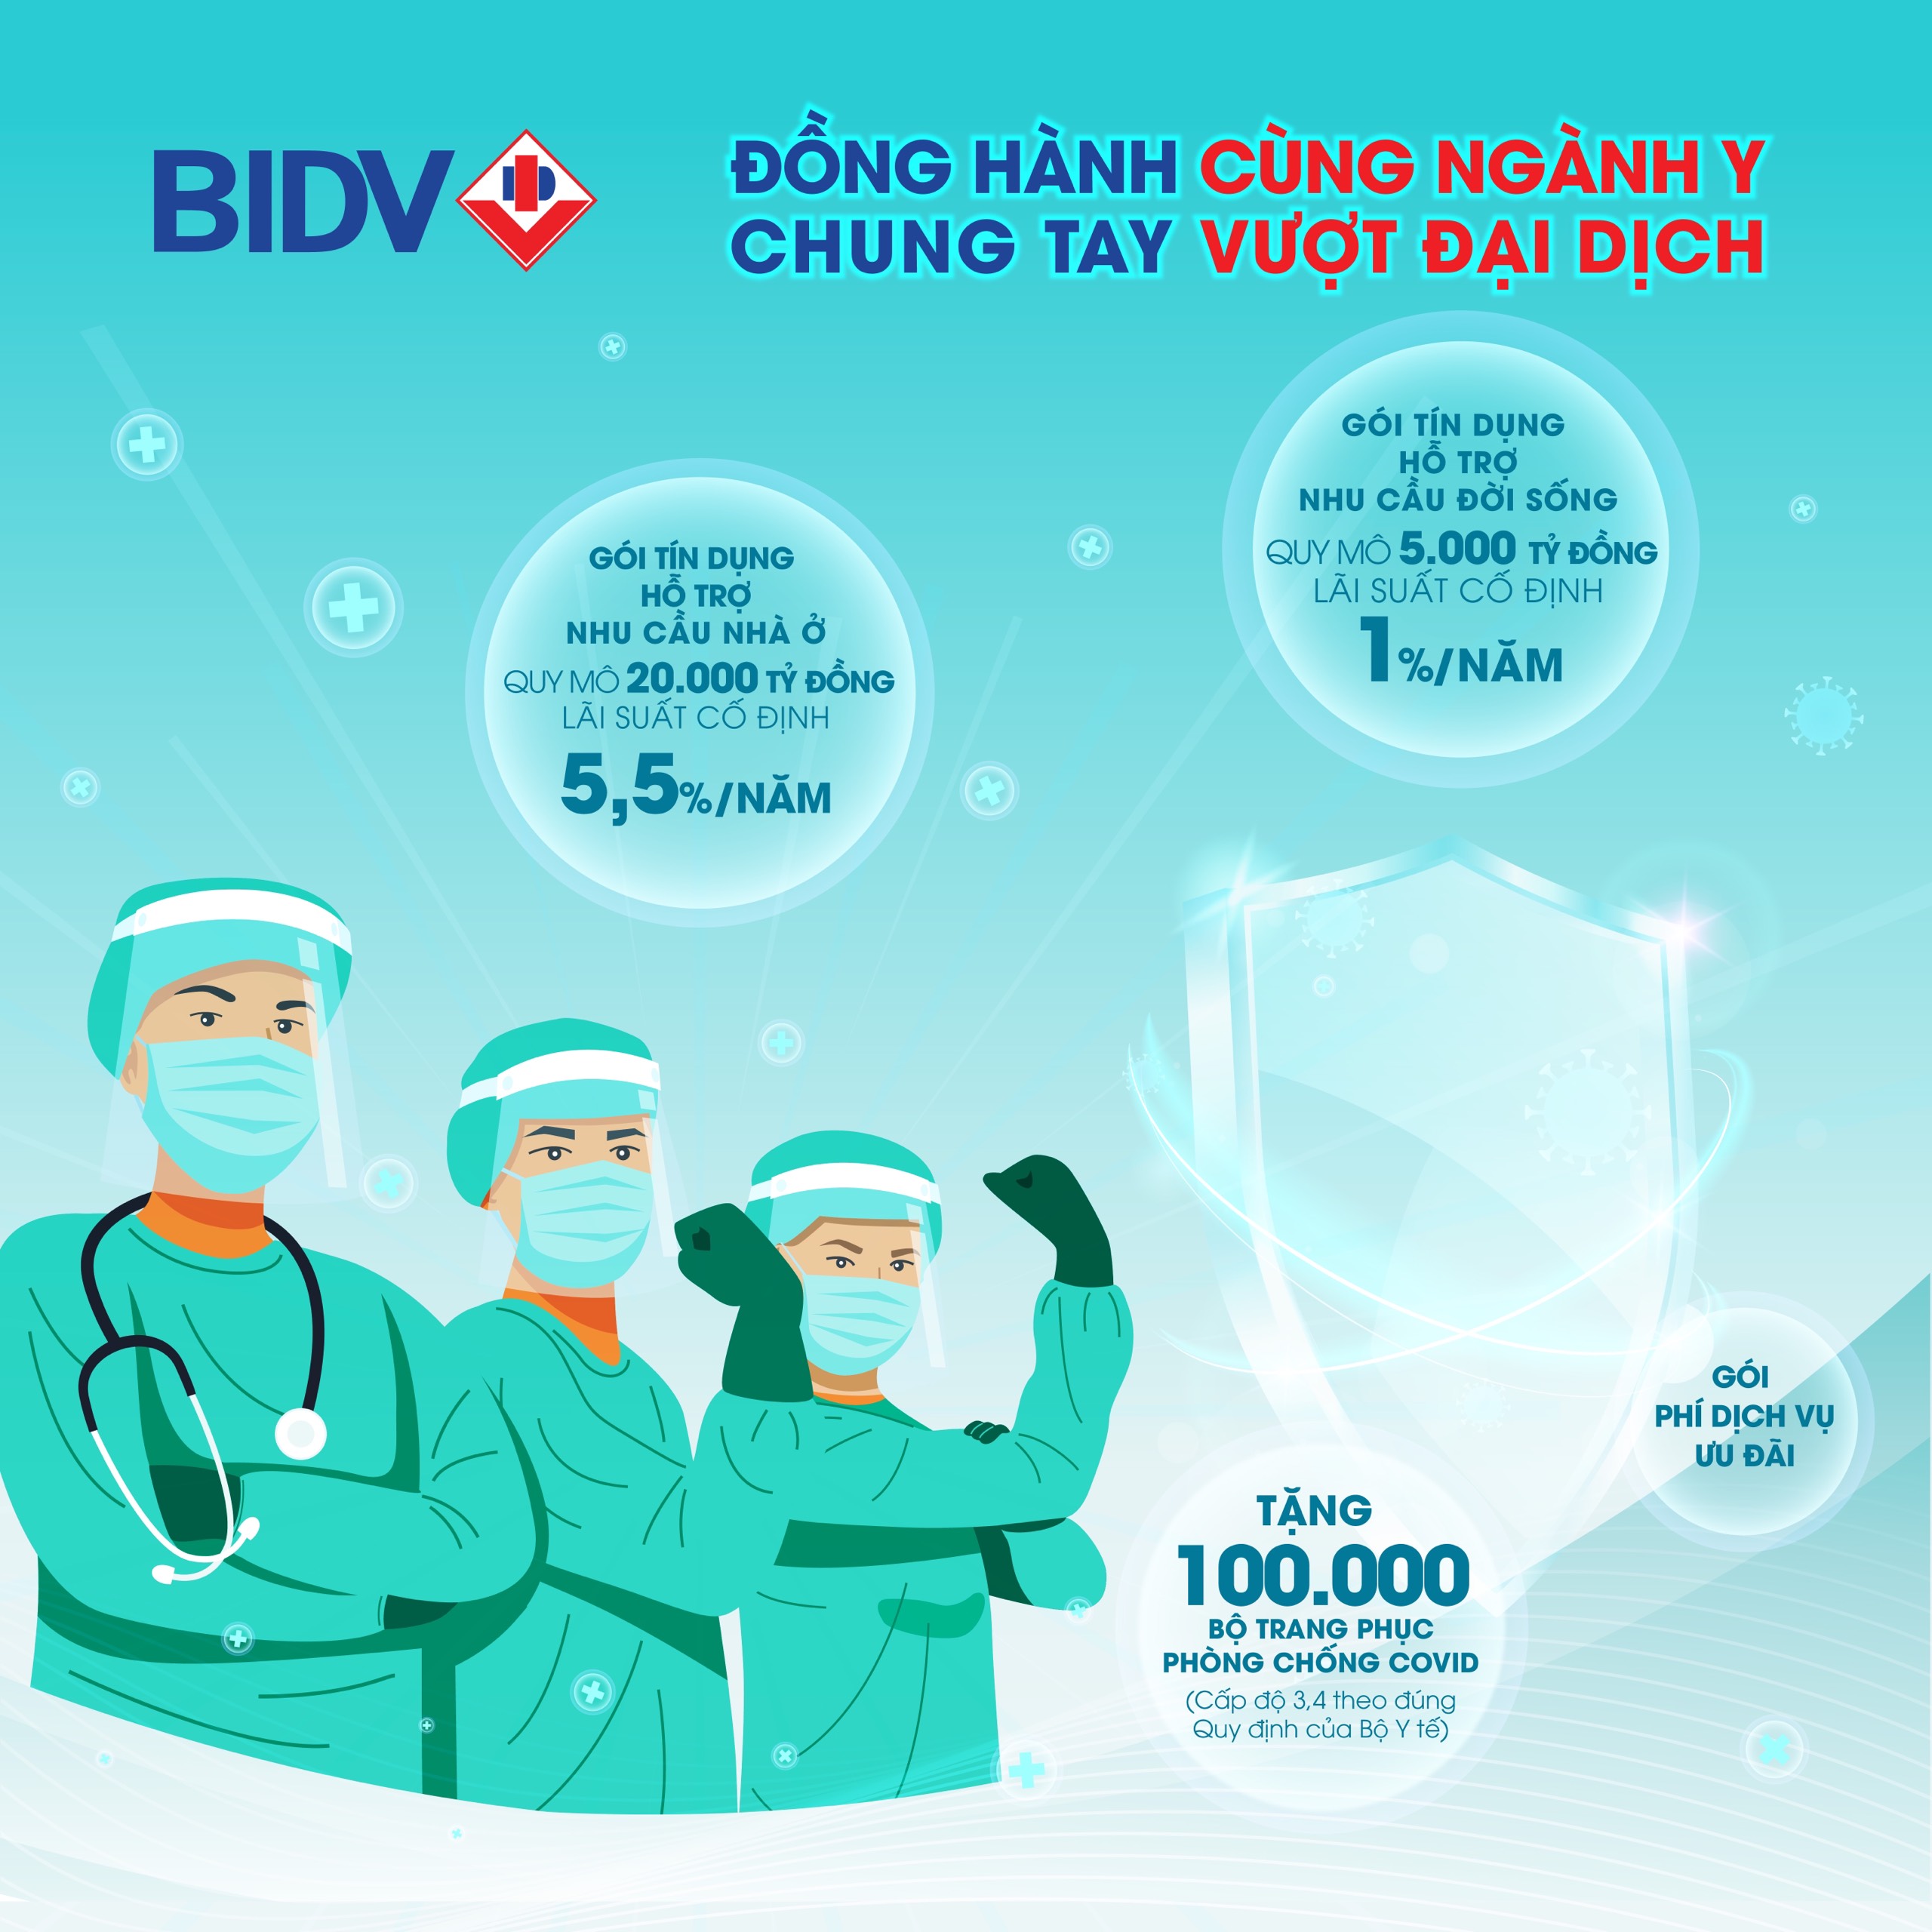 BIDV vừa công bố triển khai Chương trình hỗ trợ dành cho cán bộ y tế công tác tại các bệnh viện, cơ sở y tế trên toàn quốc với tên gọi 